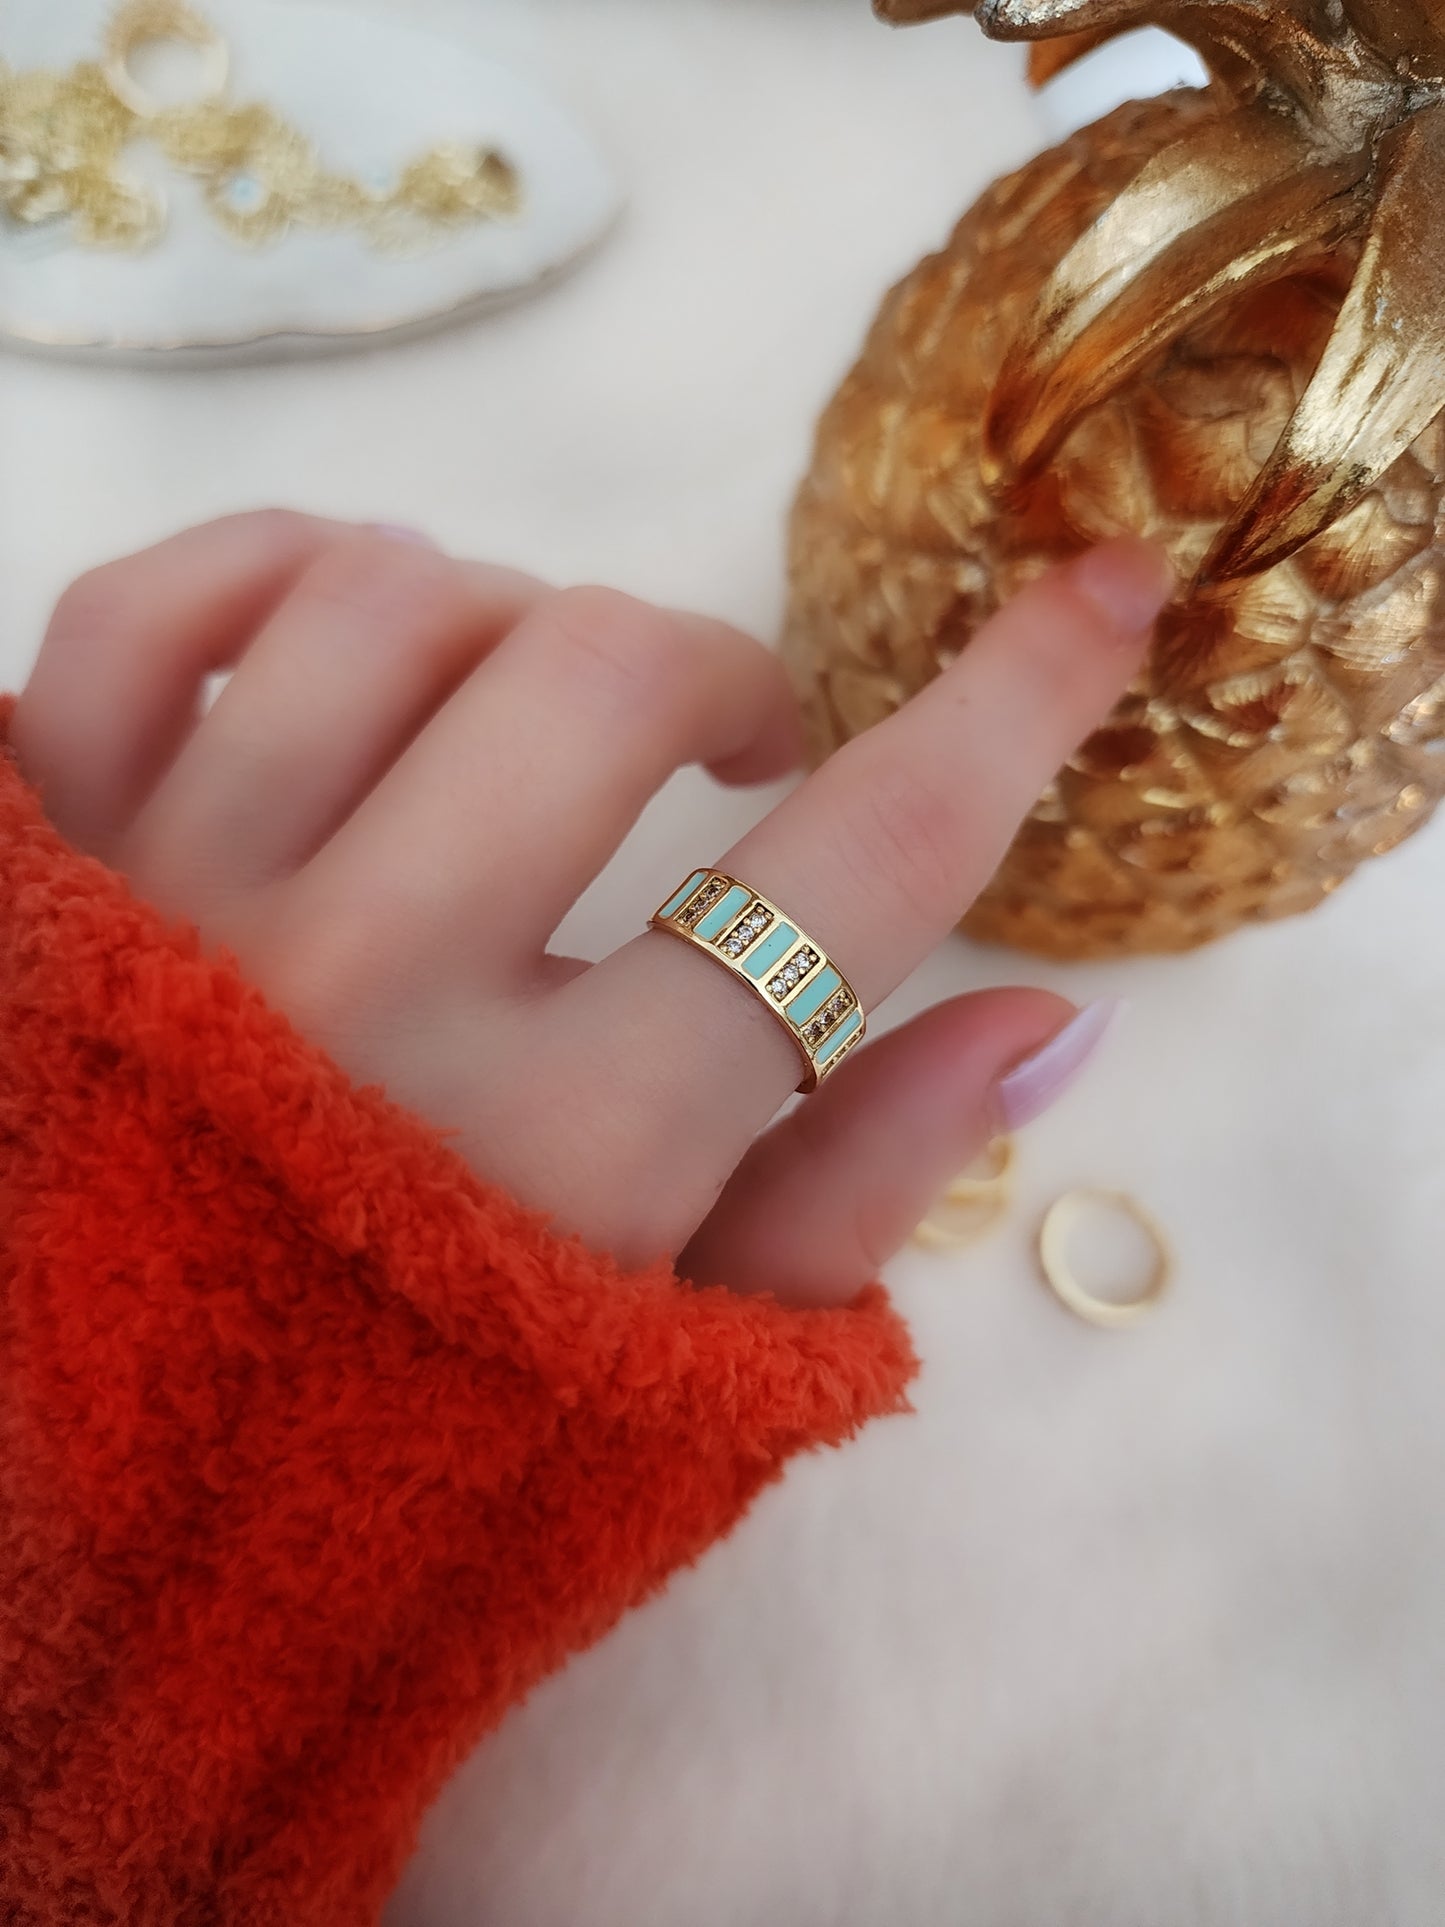 Ishtar's Ring